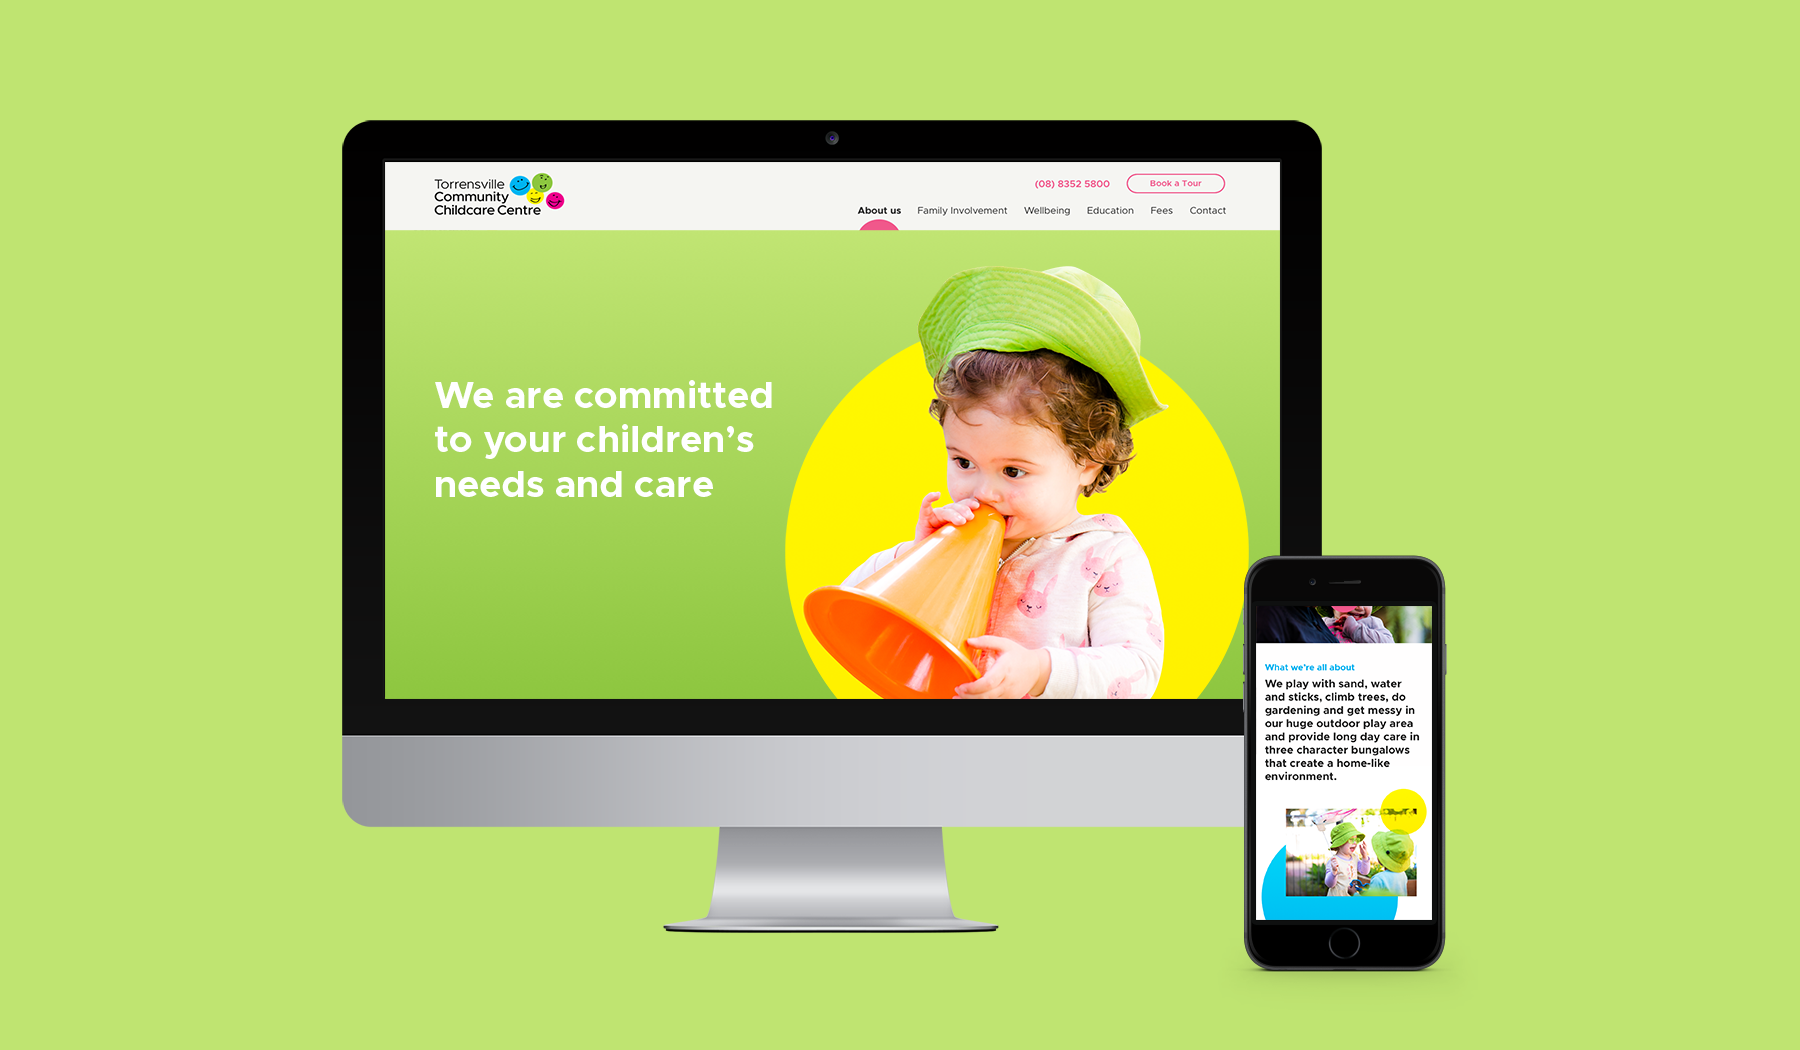 Torrensville Community Childcare Centre website mockup